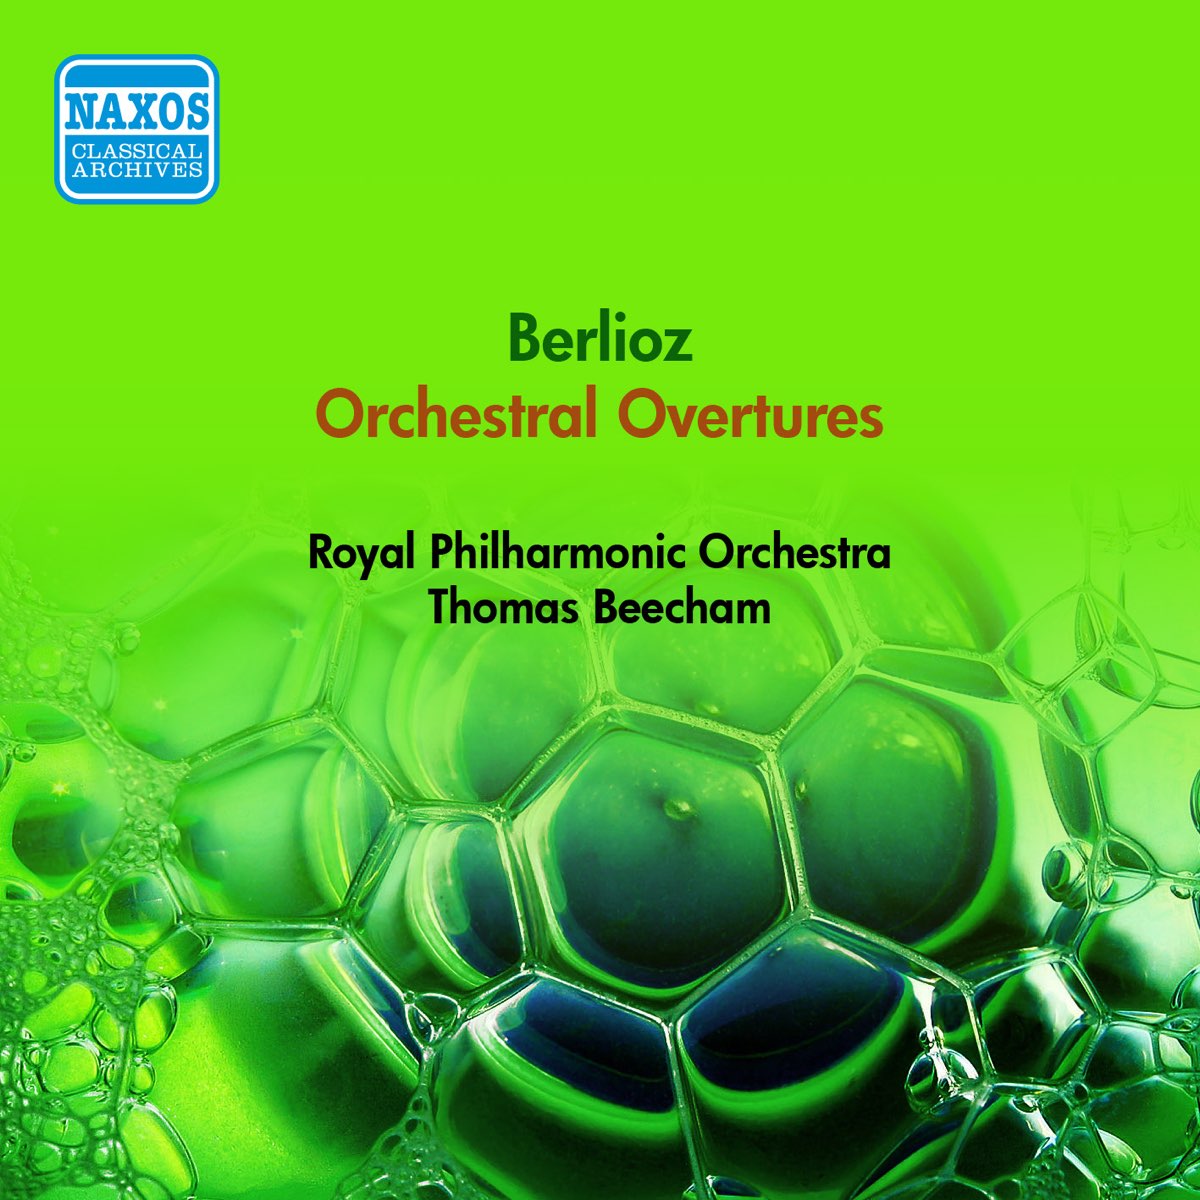 トーマス ビーチャム ロイヤル フィルハーモニー管弦楽団の Berlioz Overtures Royal Philharmonic Beecham 1954 をapple Musicで